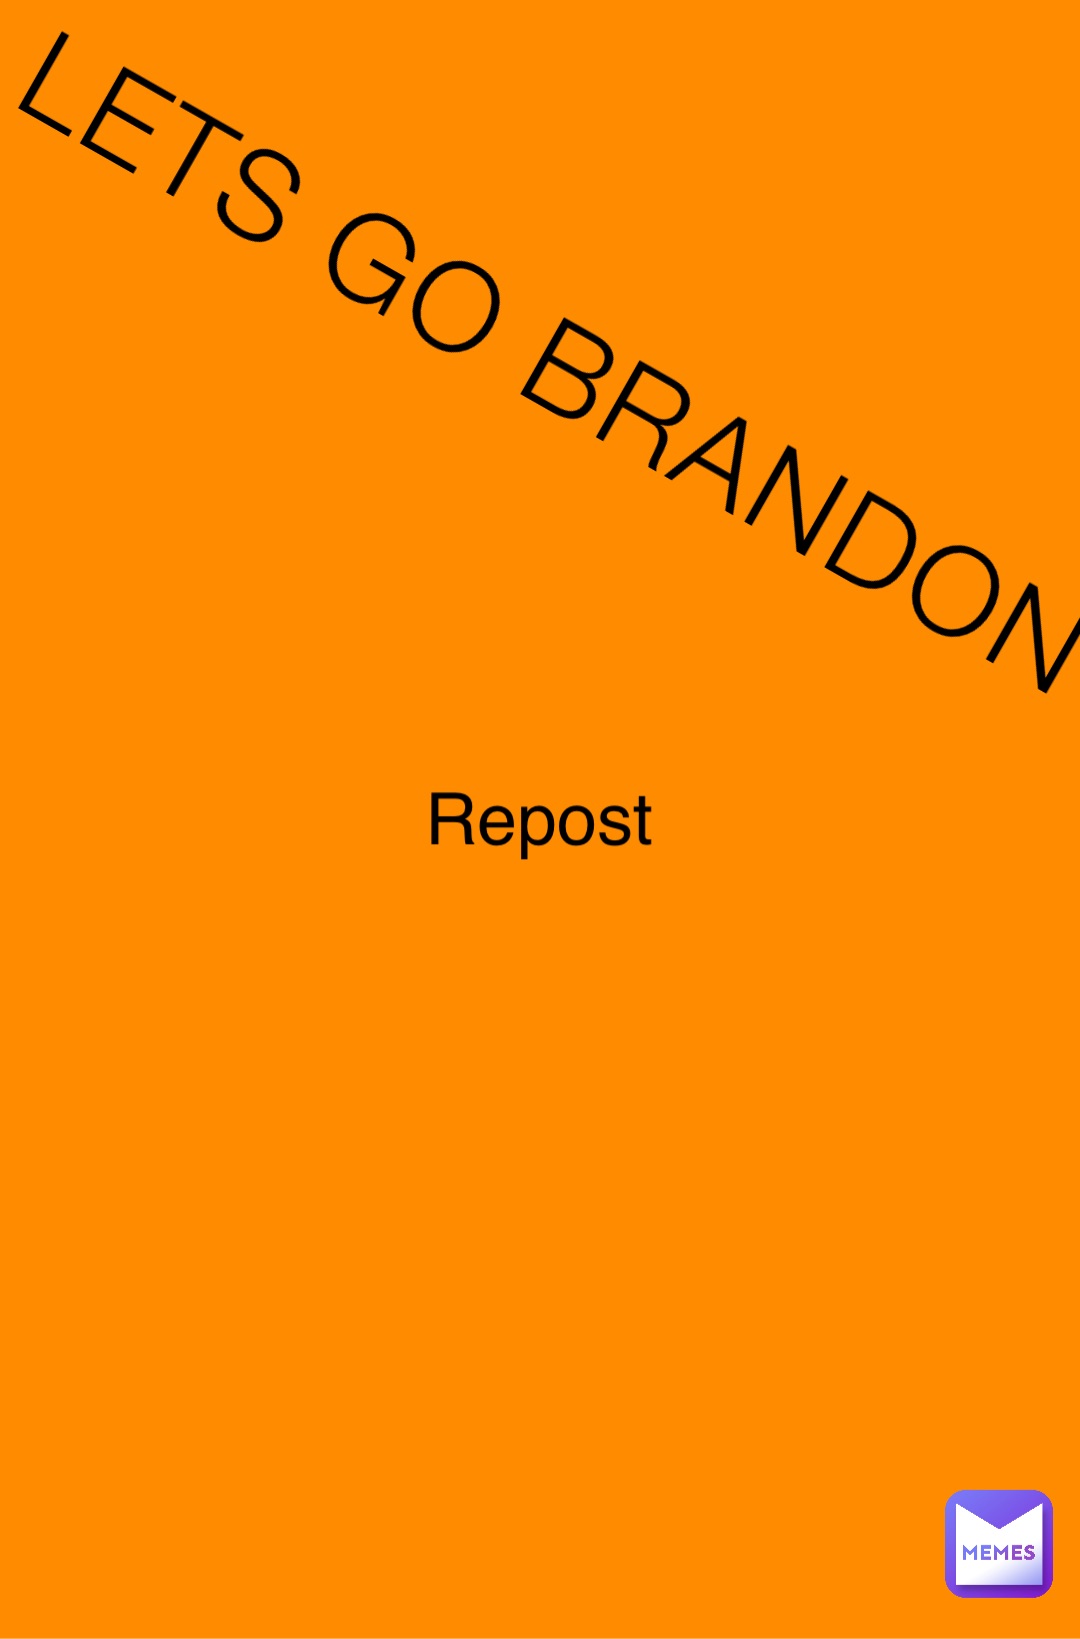 LETS GO BRANDON Repost